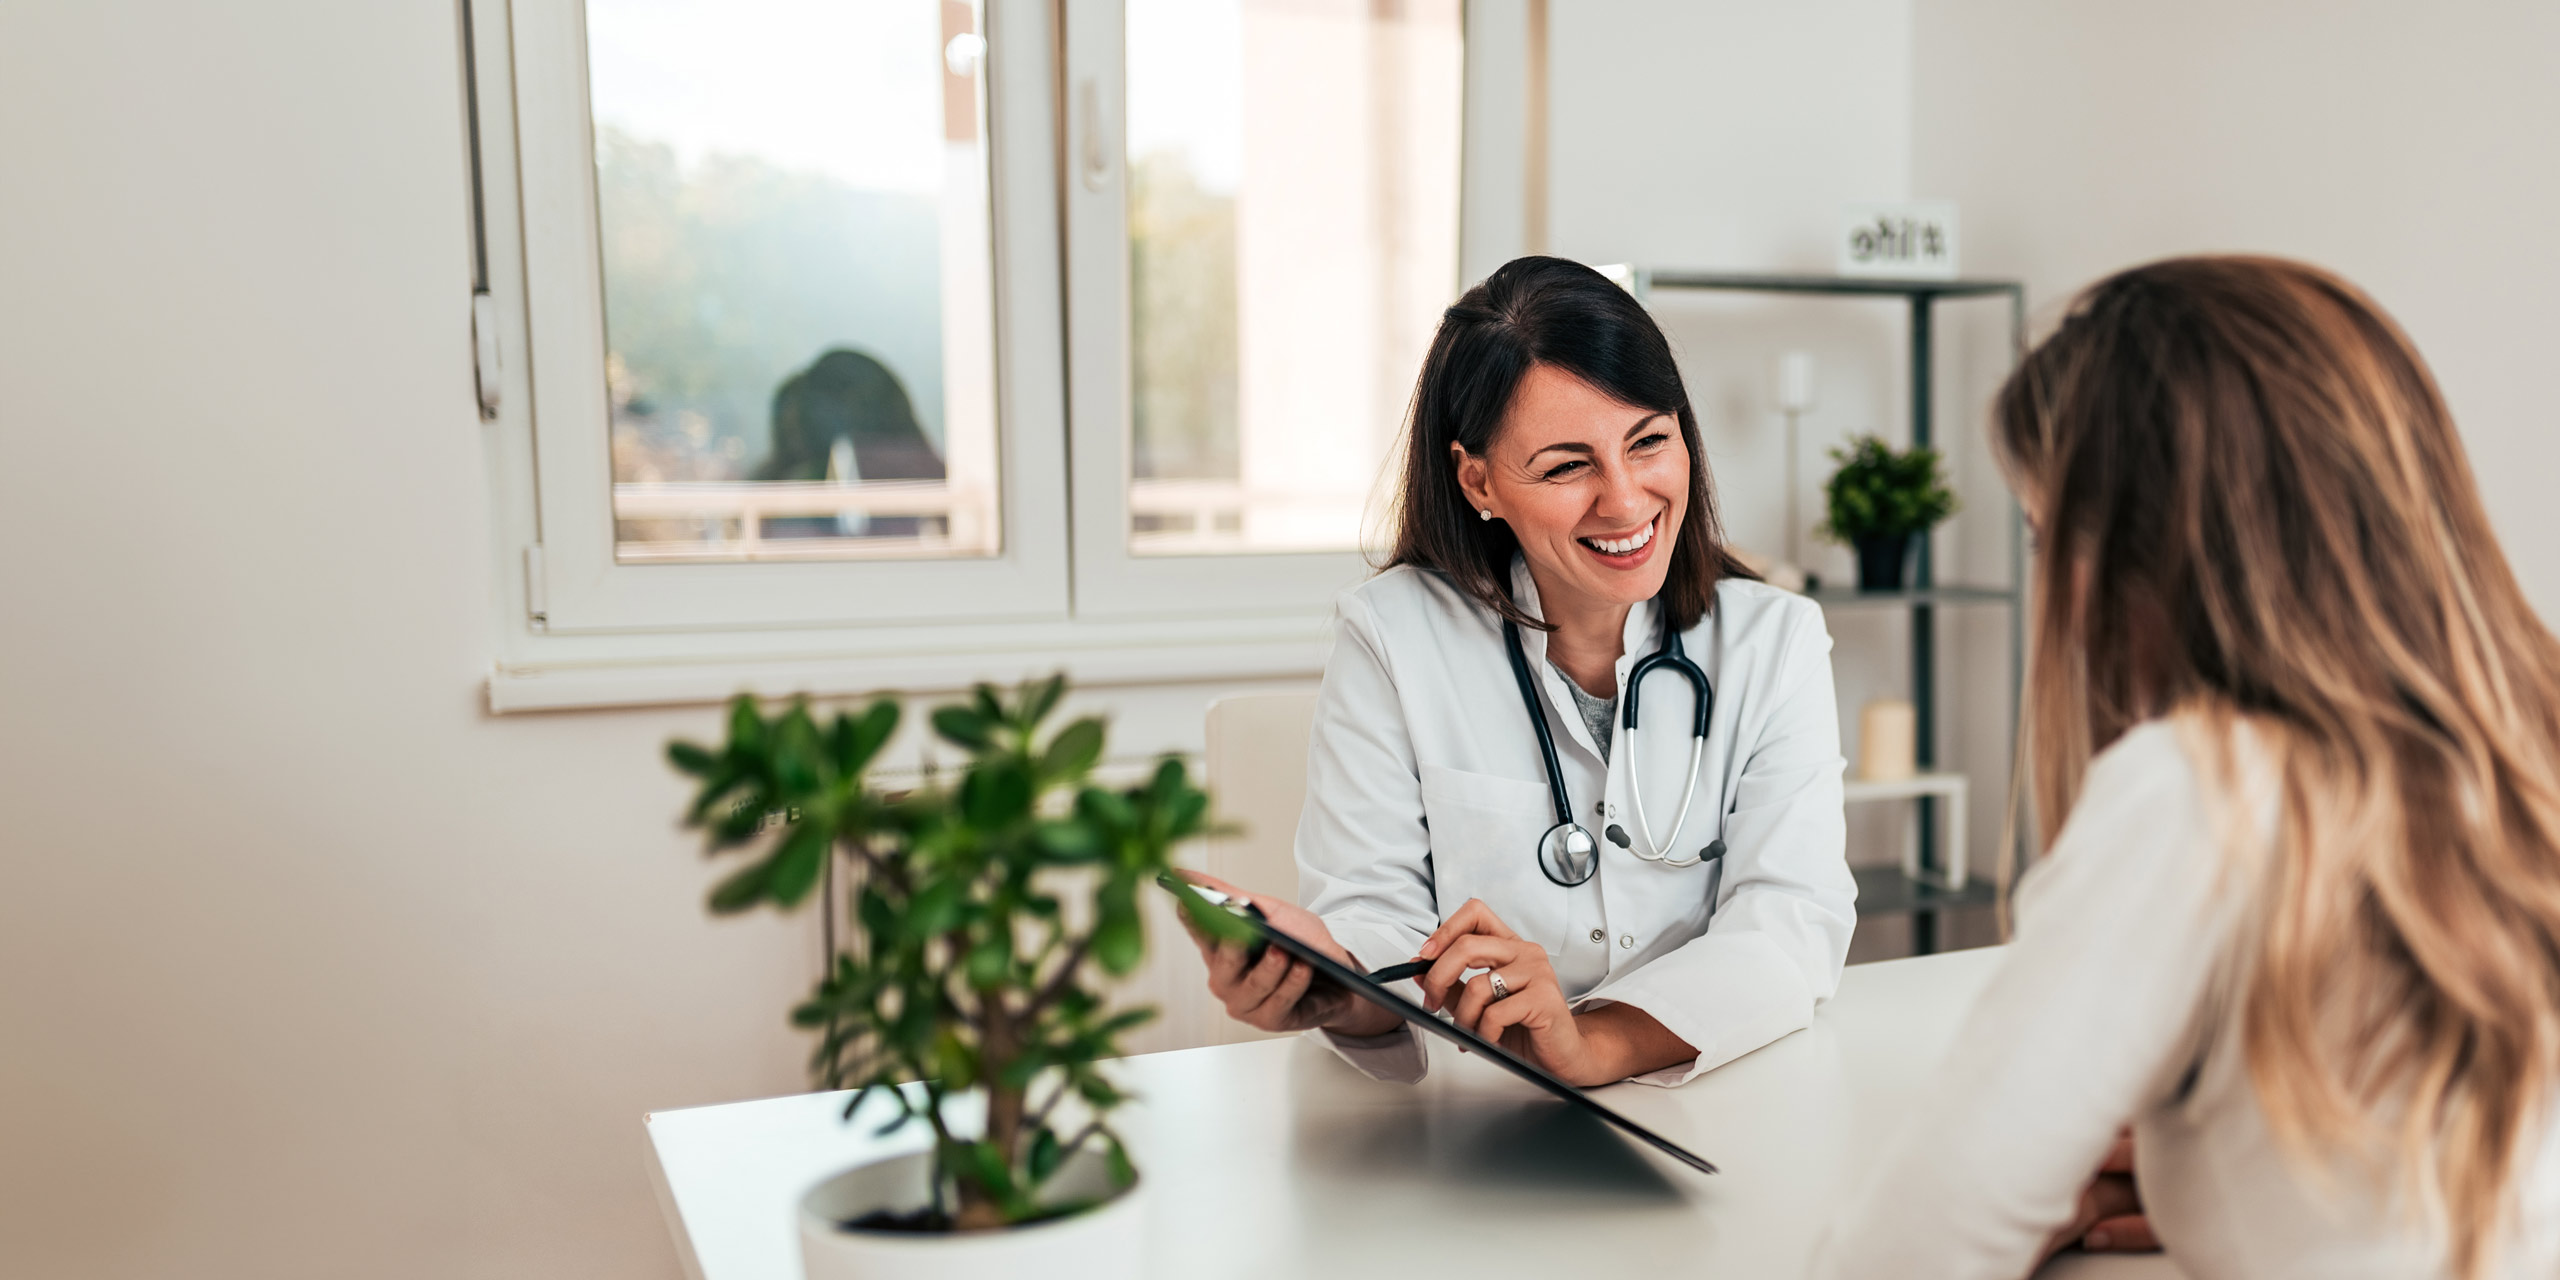 Eine Ärztin sitzt mit einem Stethoskop um den Hals an ihrem Schreibtisch, lächelt und hält ein Tablet in der Hand. Sie unterhält sich mit einer ihr gegenübersitzenden Frau. Der Raum hat große Fenster und im Vordergrund steht eine Topfpflanze.